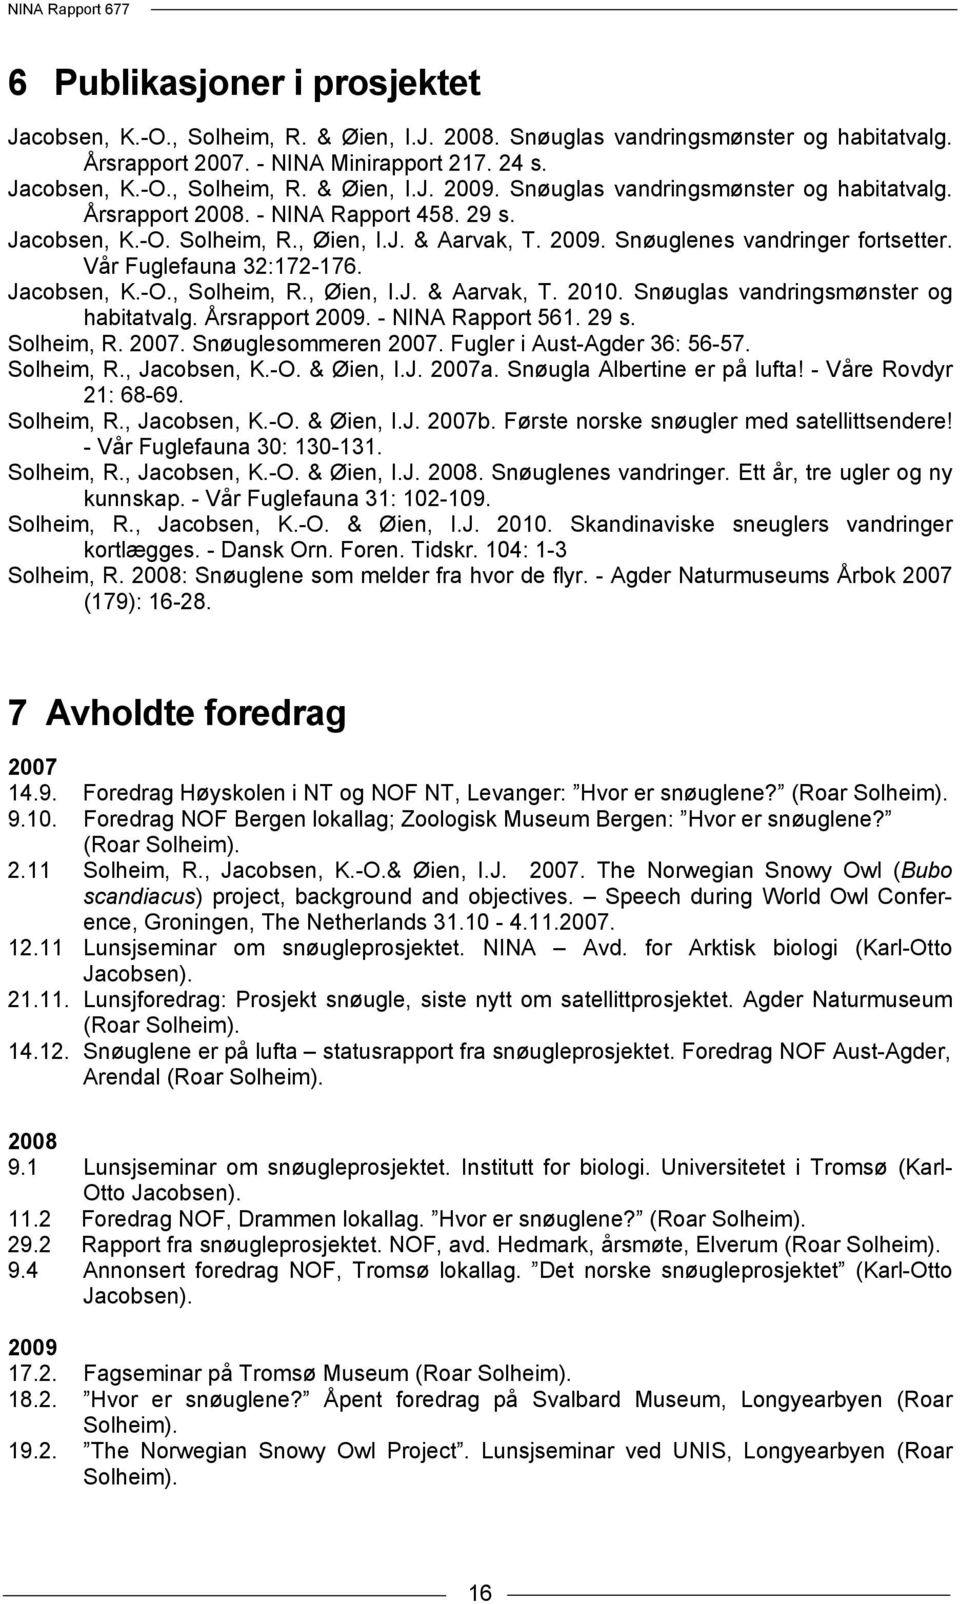 Vår Fuglefauna 32:172-176. Jacobsen, K.-O., Solheim, R., Øien, I.J. & Aarvak, T. 2010. Snøuglas vandringsmønster og habitatvalg. Årsrapport 2009. - NINA Rapport 561. 29 s. Solheim, R. 2007.